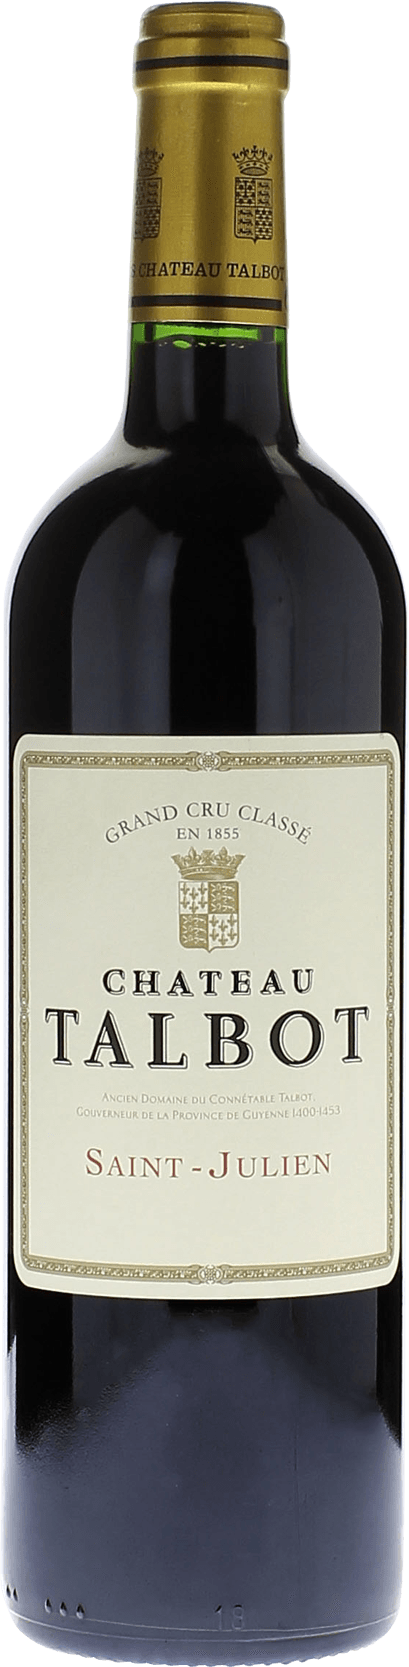 Talbot 2020 4me Grand cru class Saint-Julien, Bordeaux rouge